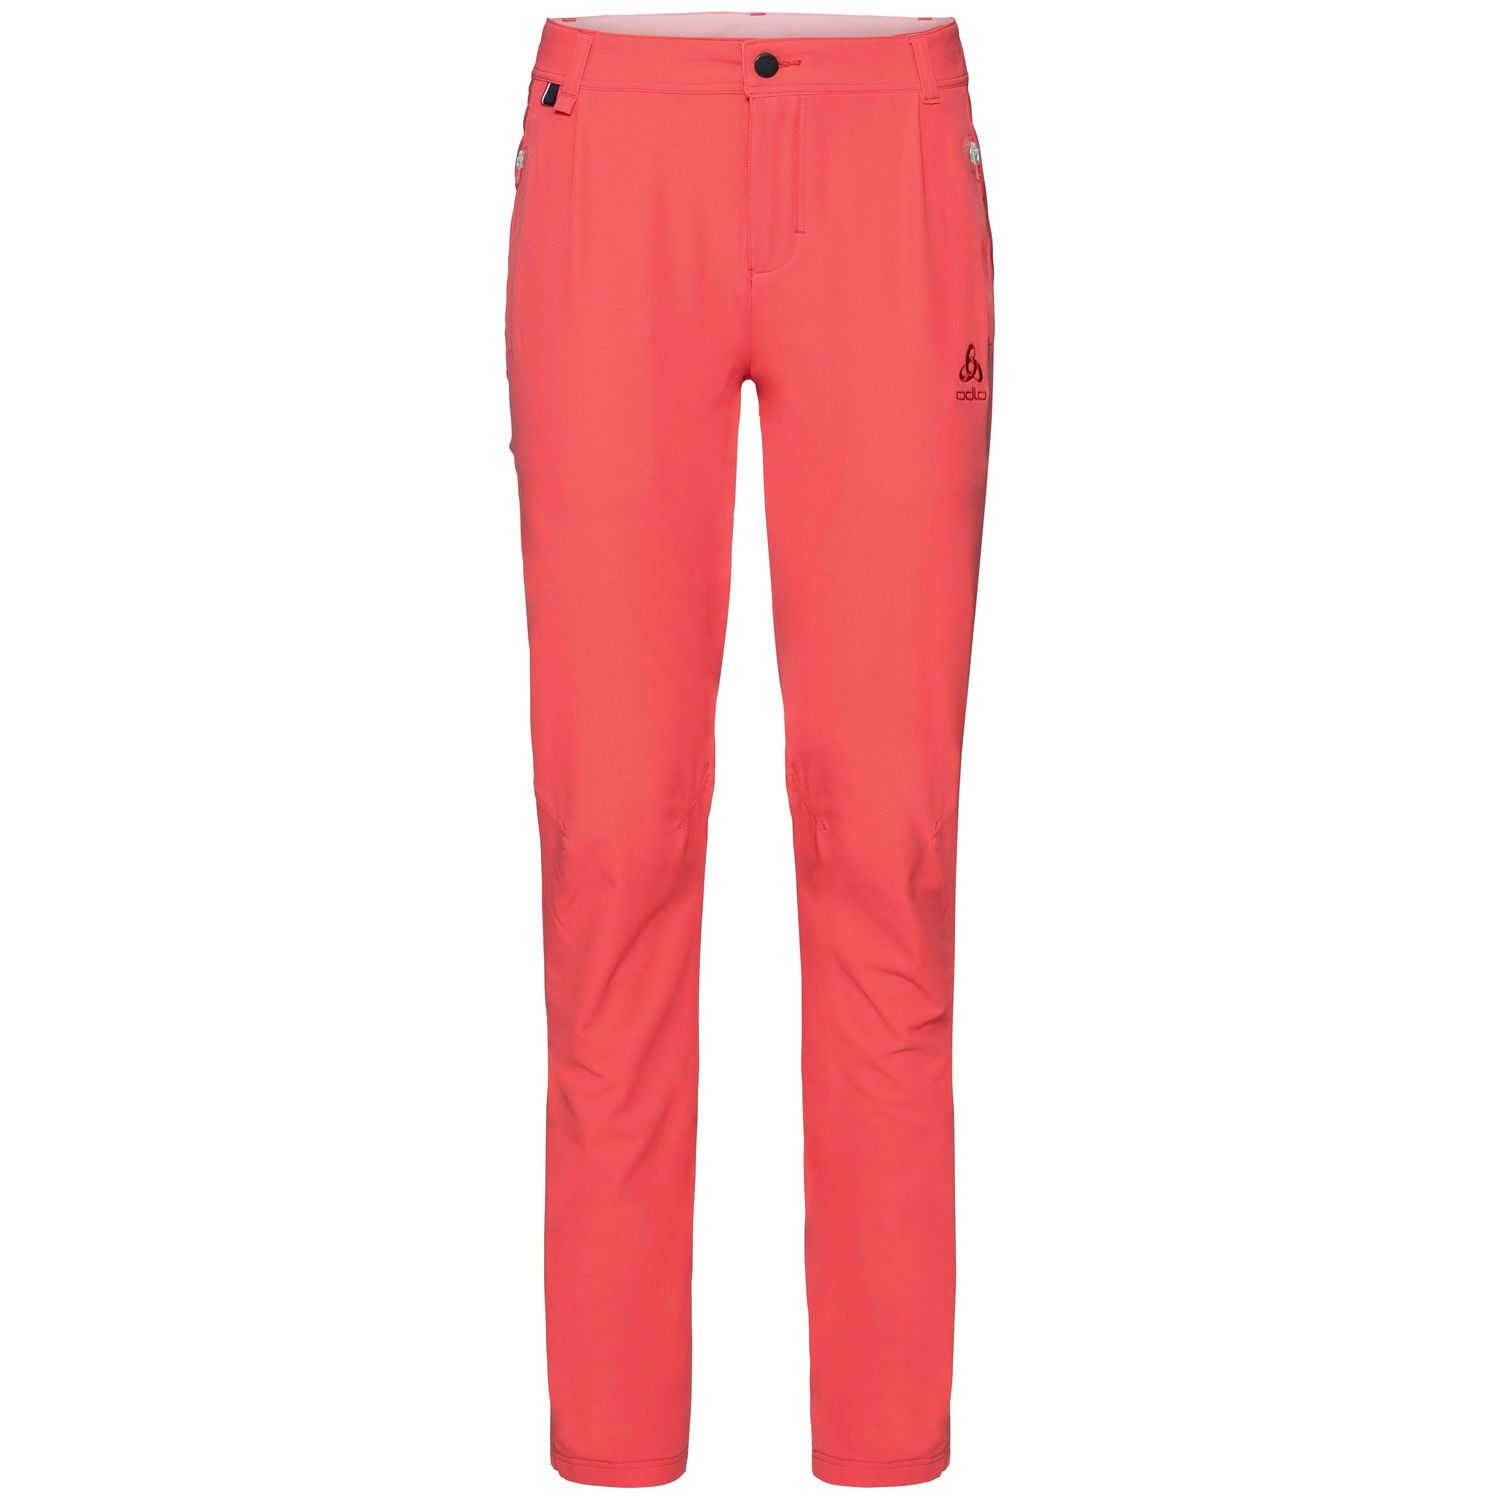 Odlo - Pants Koya Cool Pro - Trekking trousers - Women's